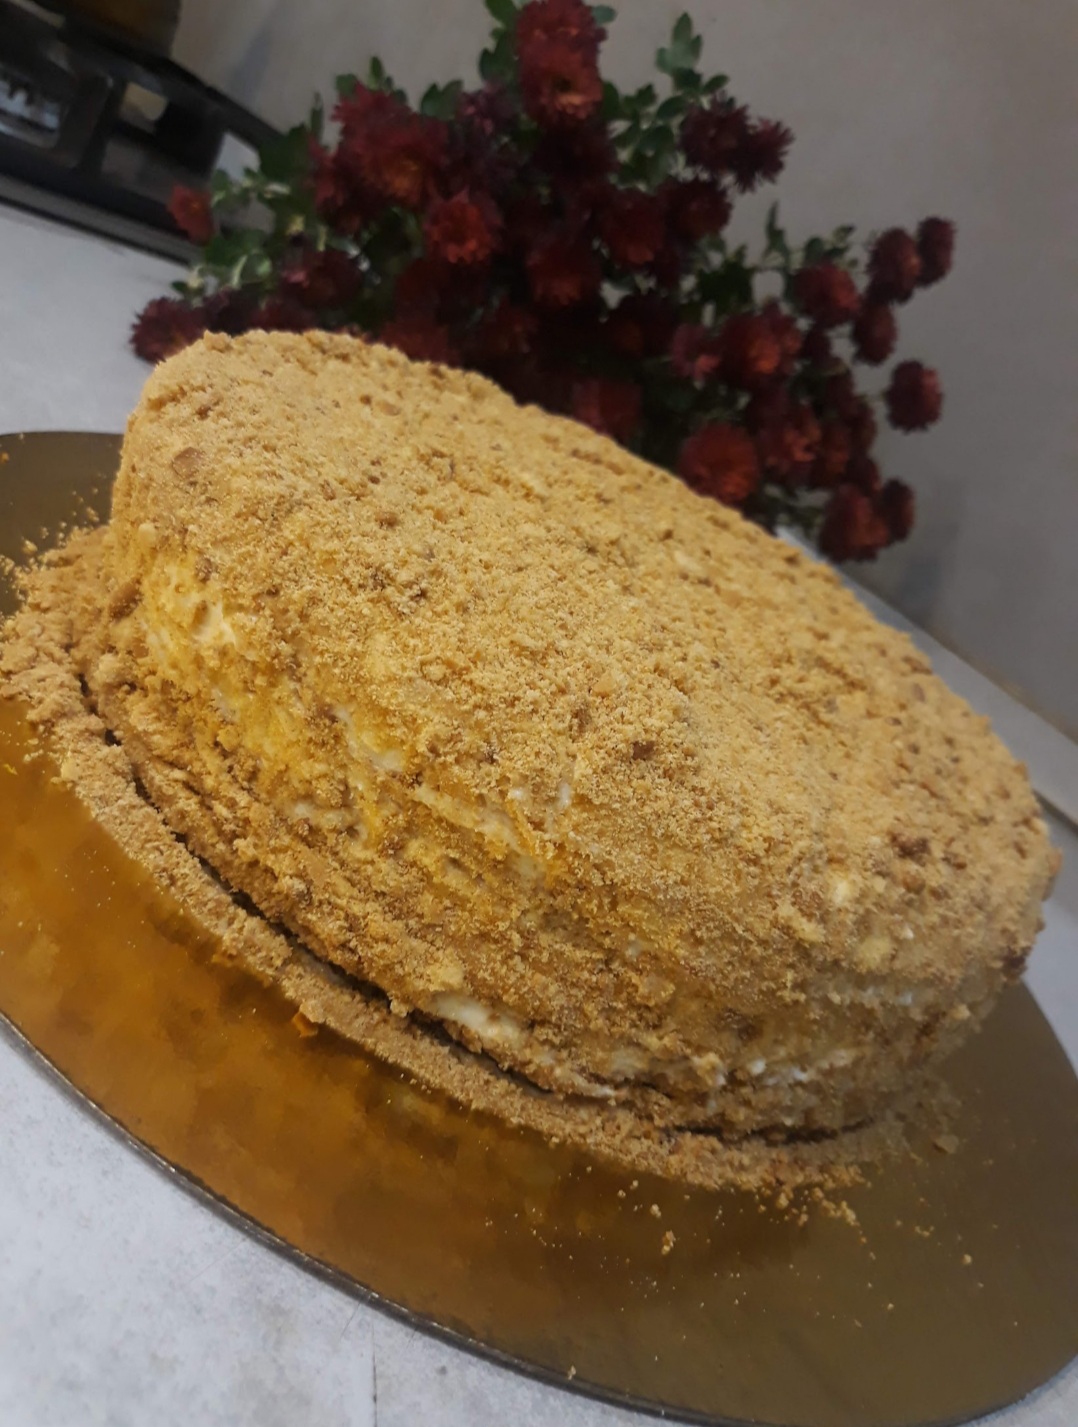 Пышный медовый бисквит для торта — 5 простых рецептов в домашних условиях